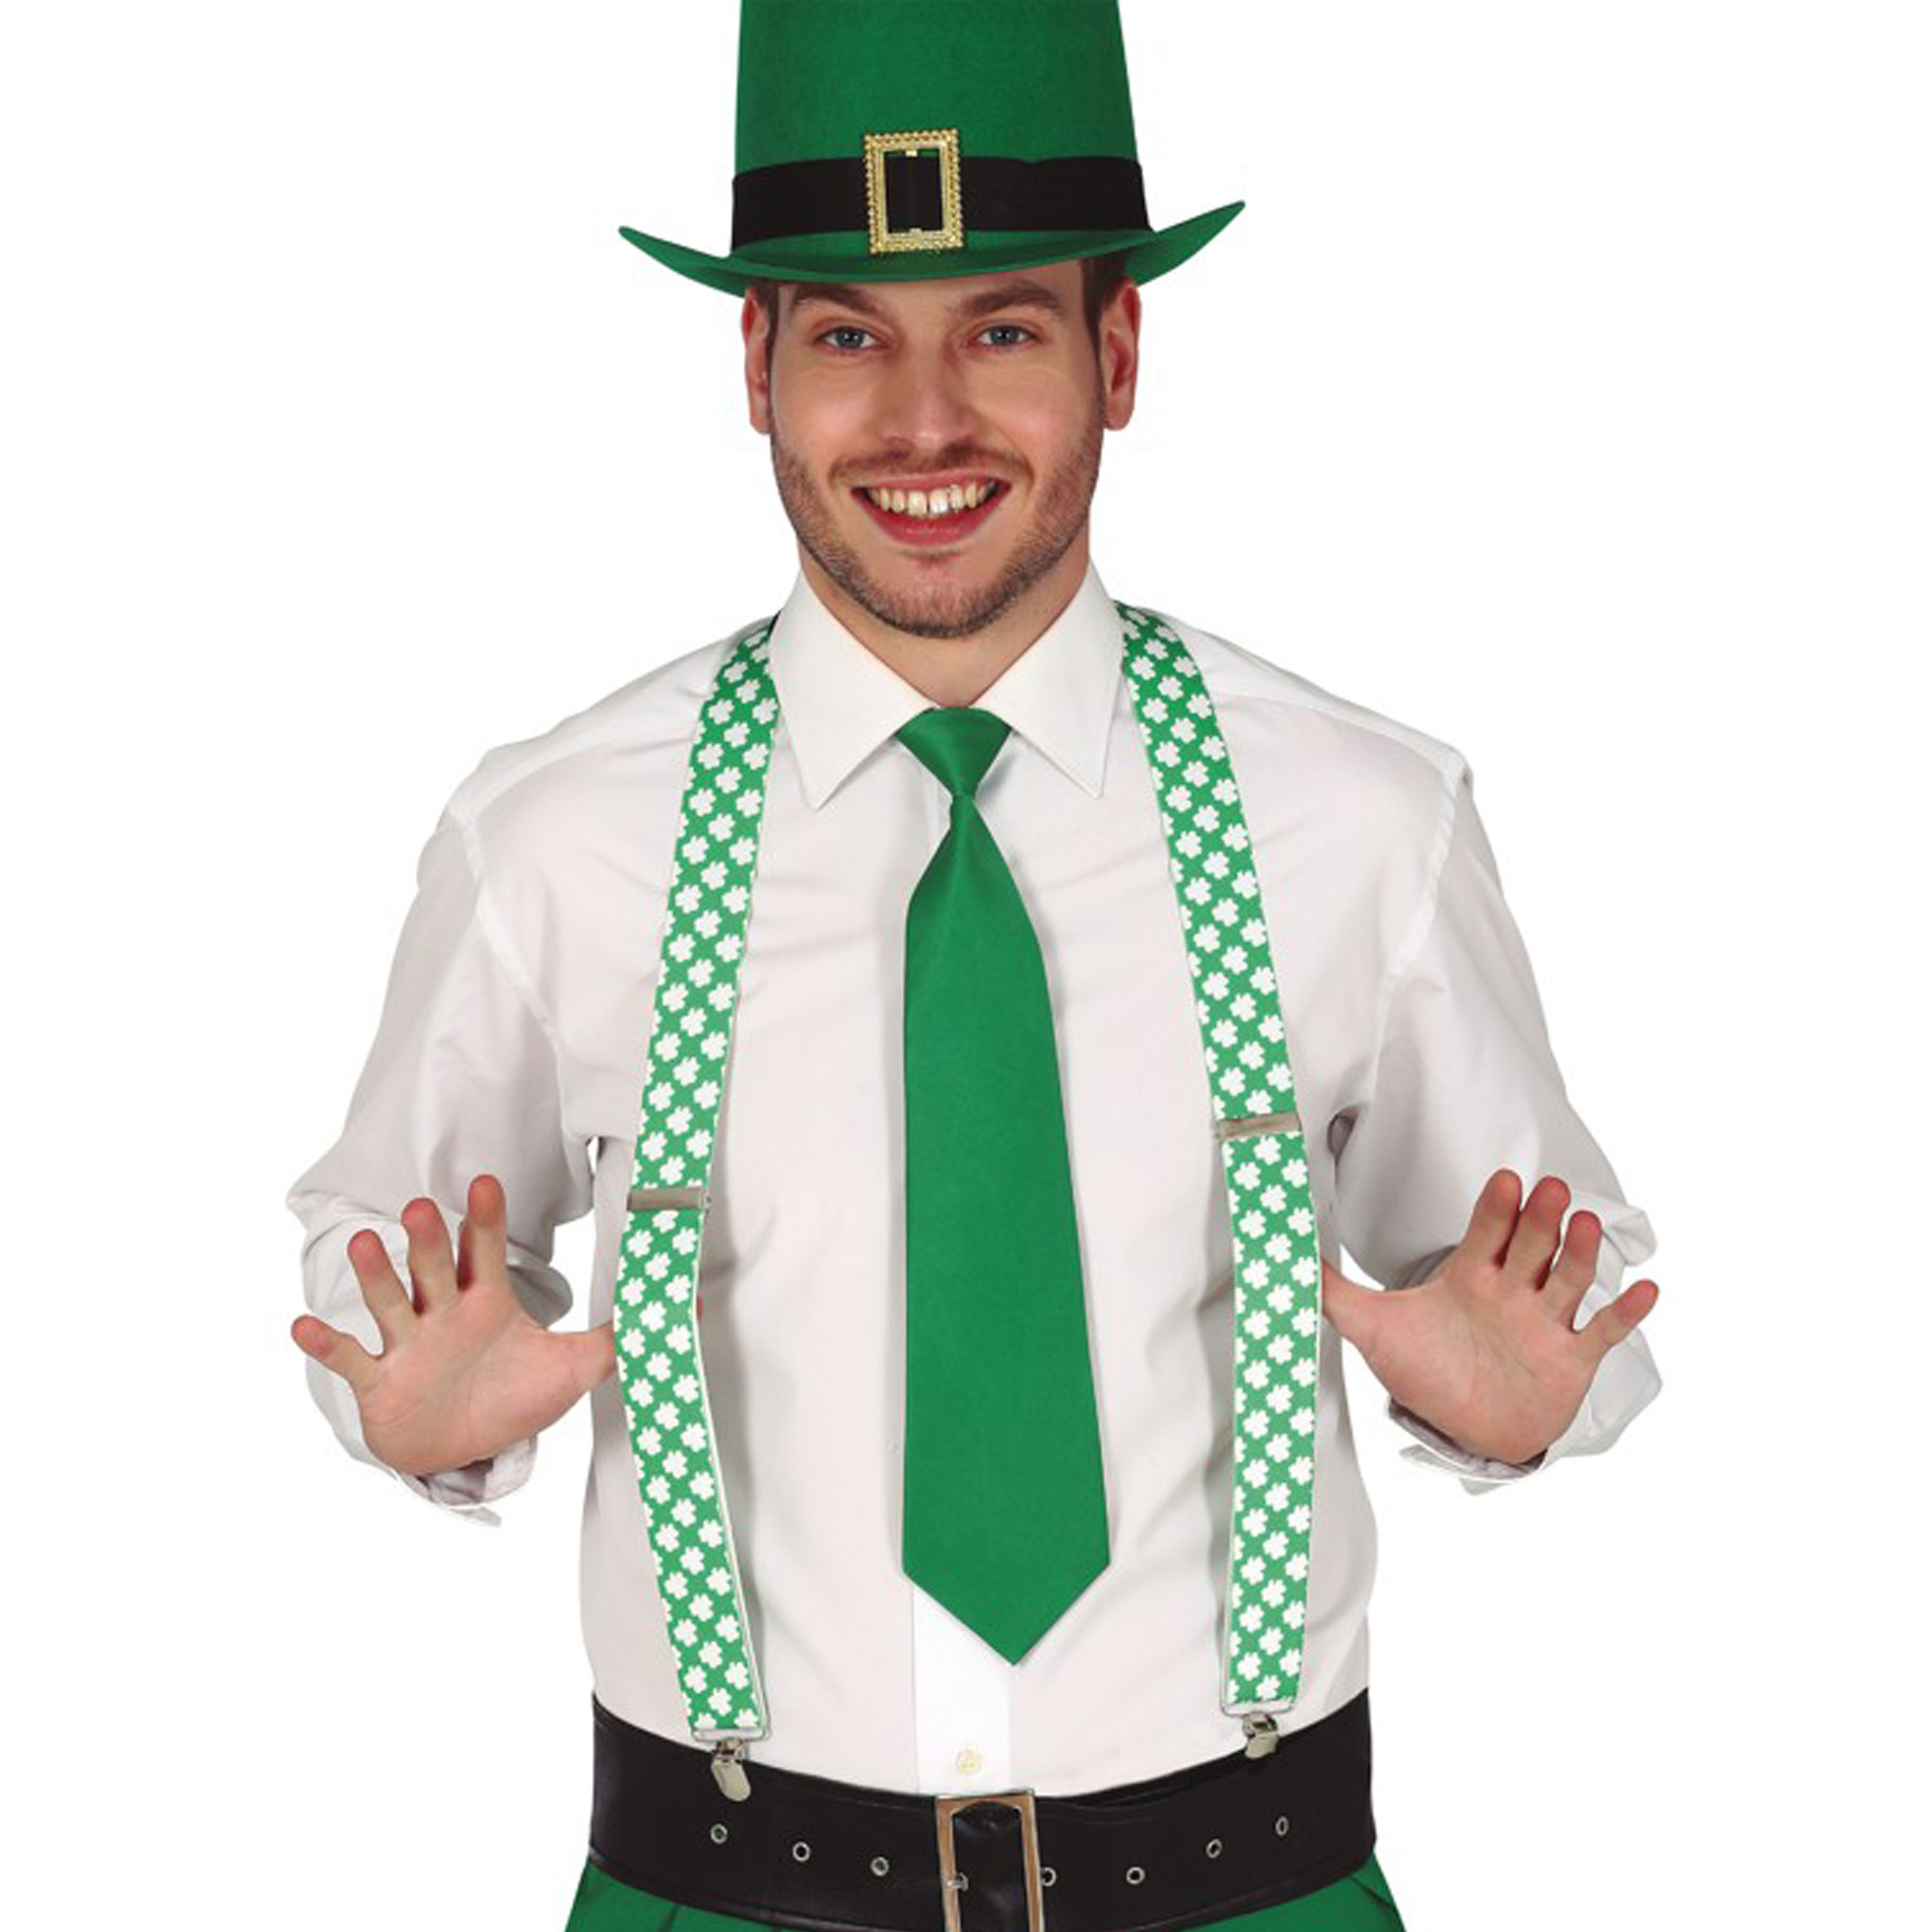 St. Patricks Day verkleed set bretels-stropdas-hoed groen volwassenen carnaval